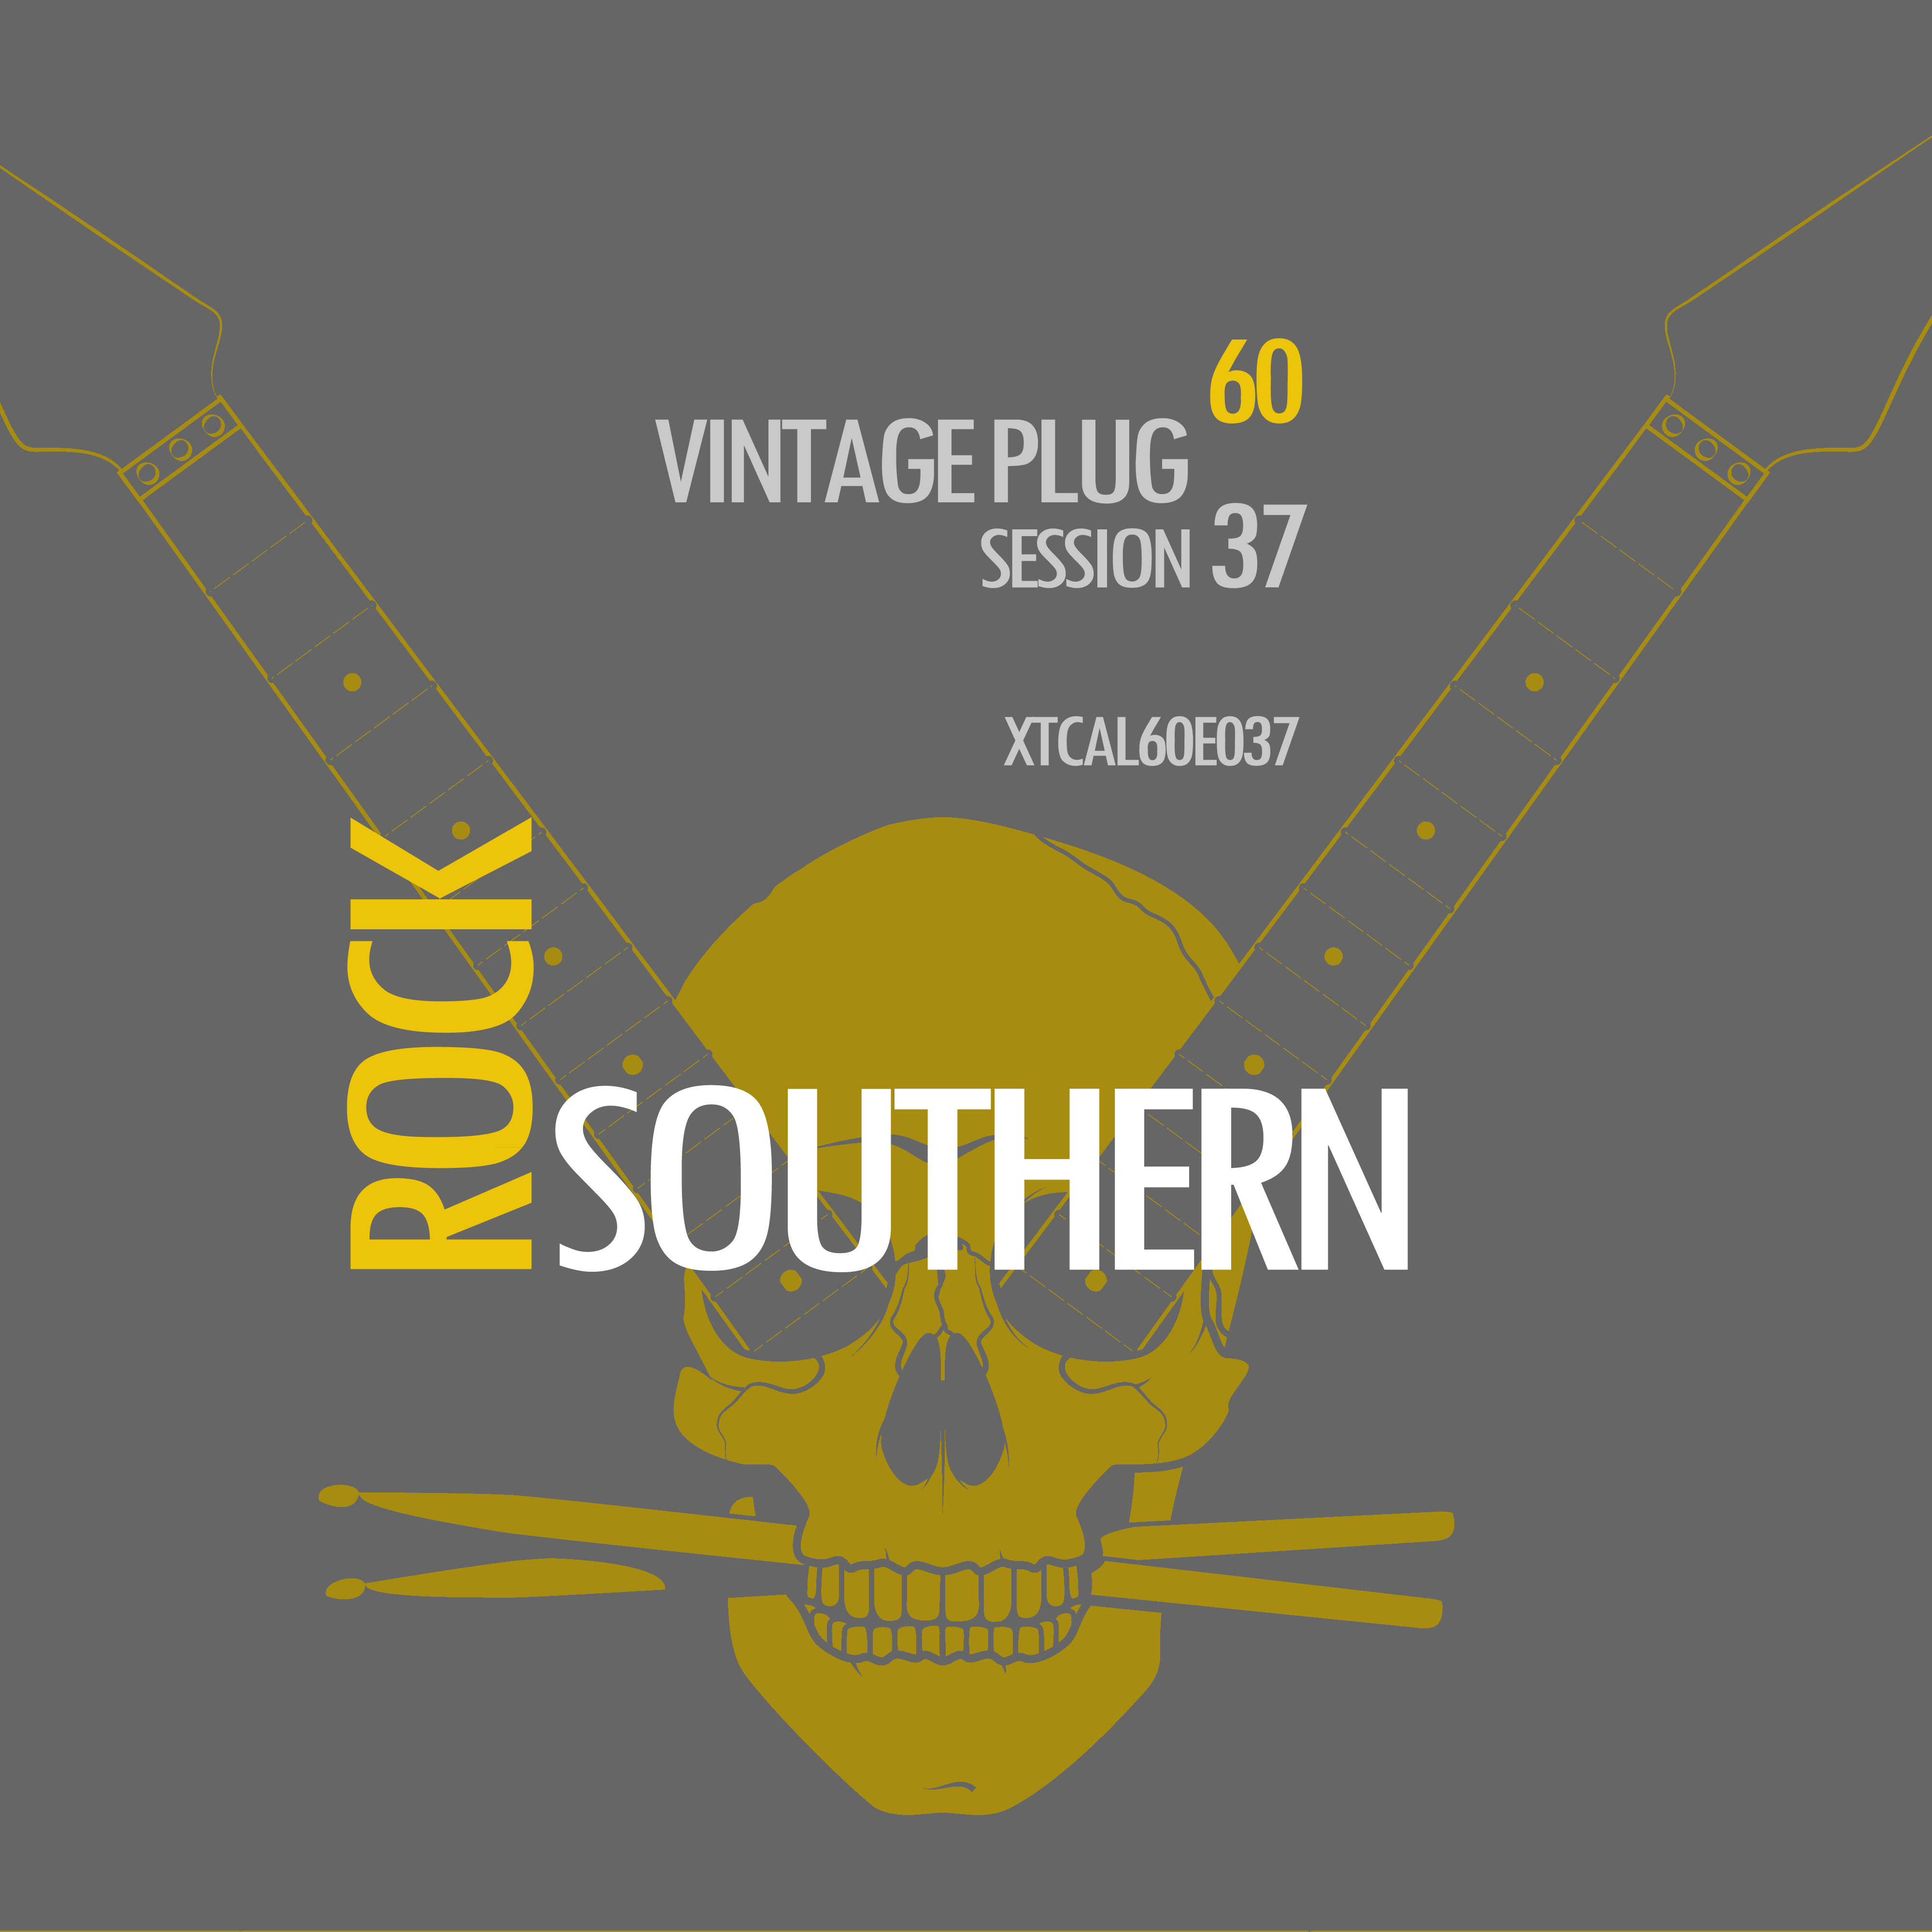 Vintage Plug 60: Session 37 - Southern Rock